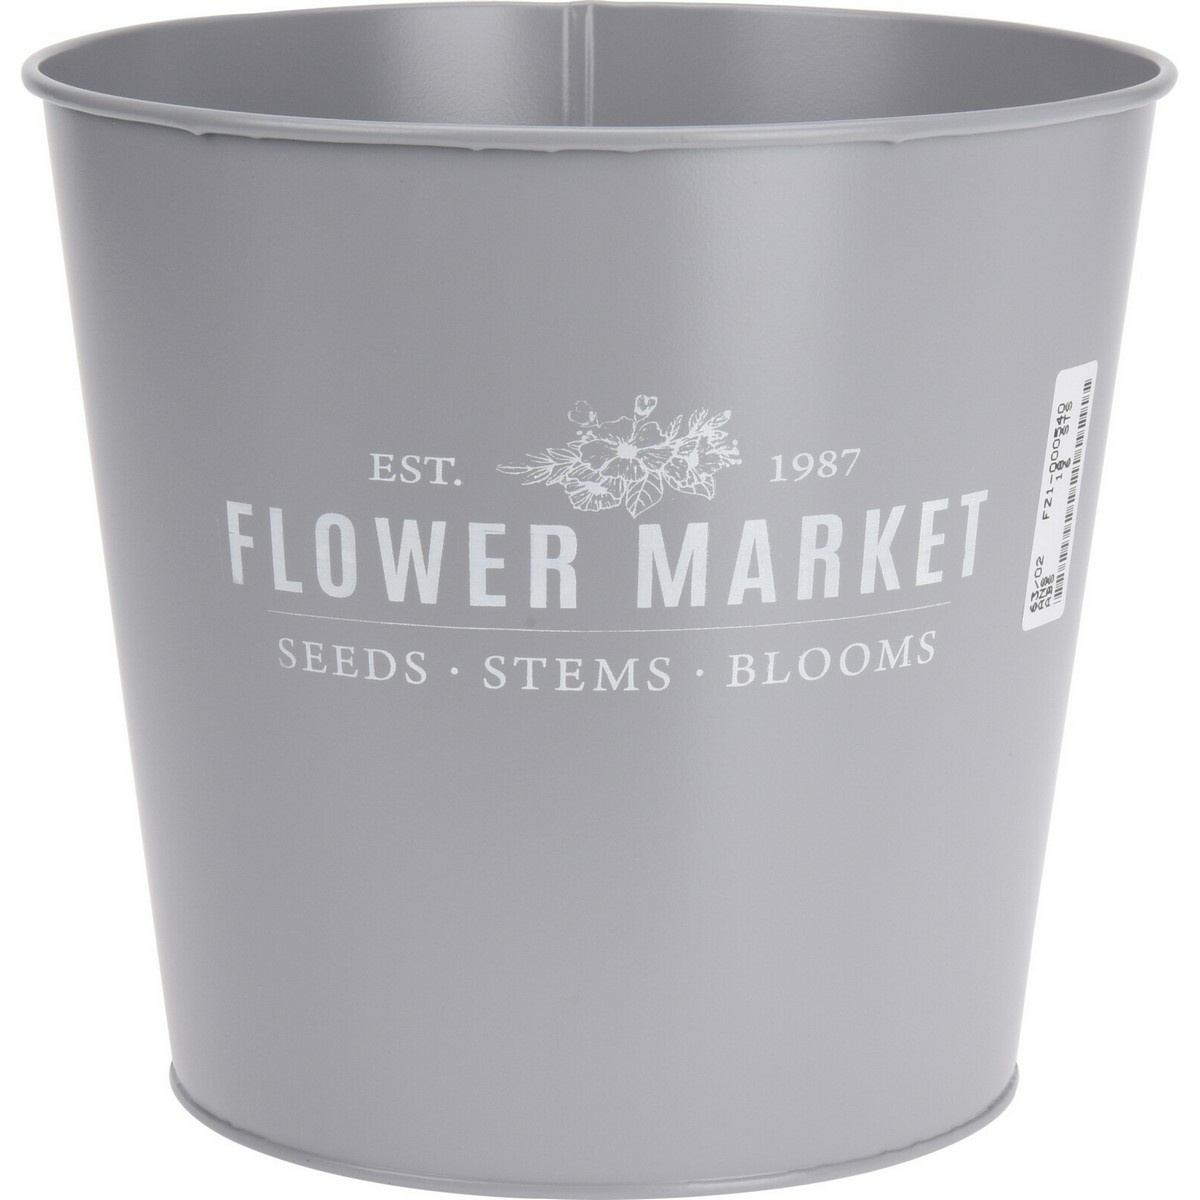 Flower market fém virágtartó kaspó, szürke, 18 x 16 cm